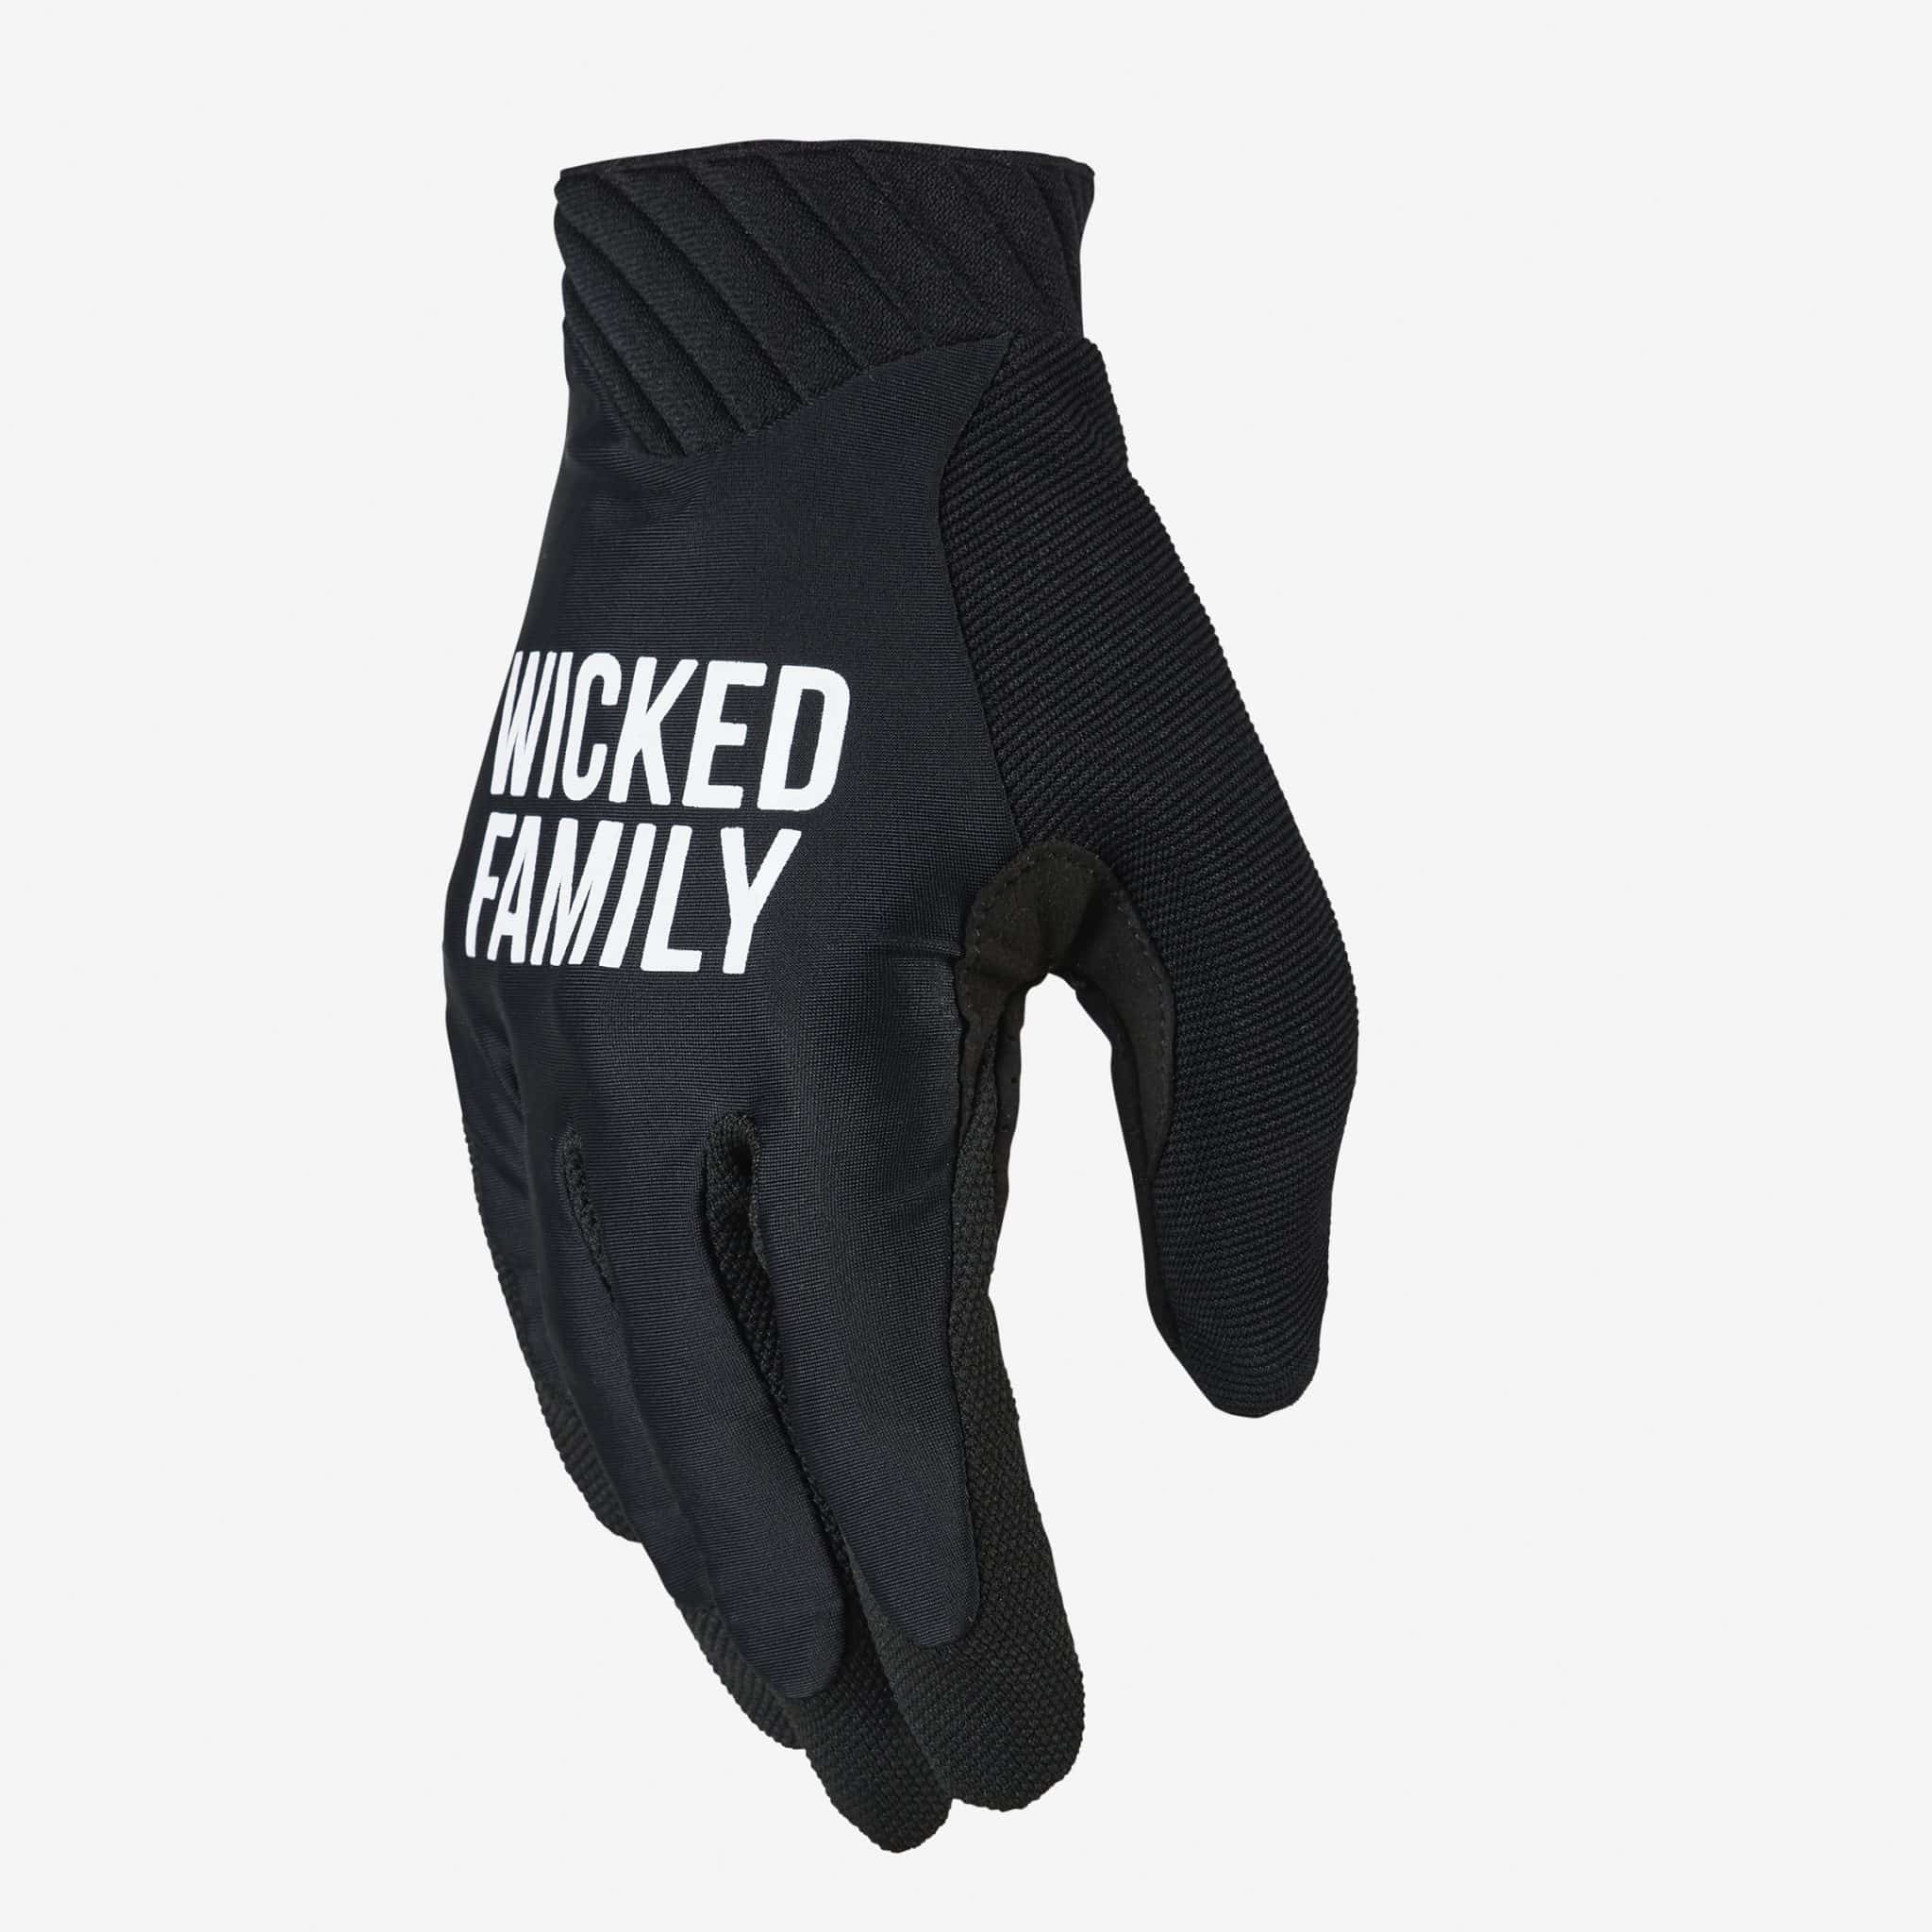 gloves gear Motocross Dirt gloves bike & MX Wicked Family - -